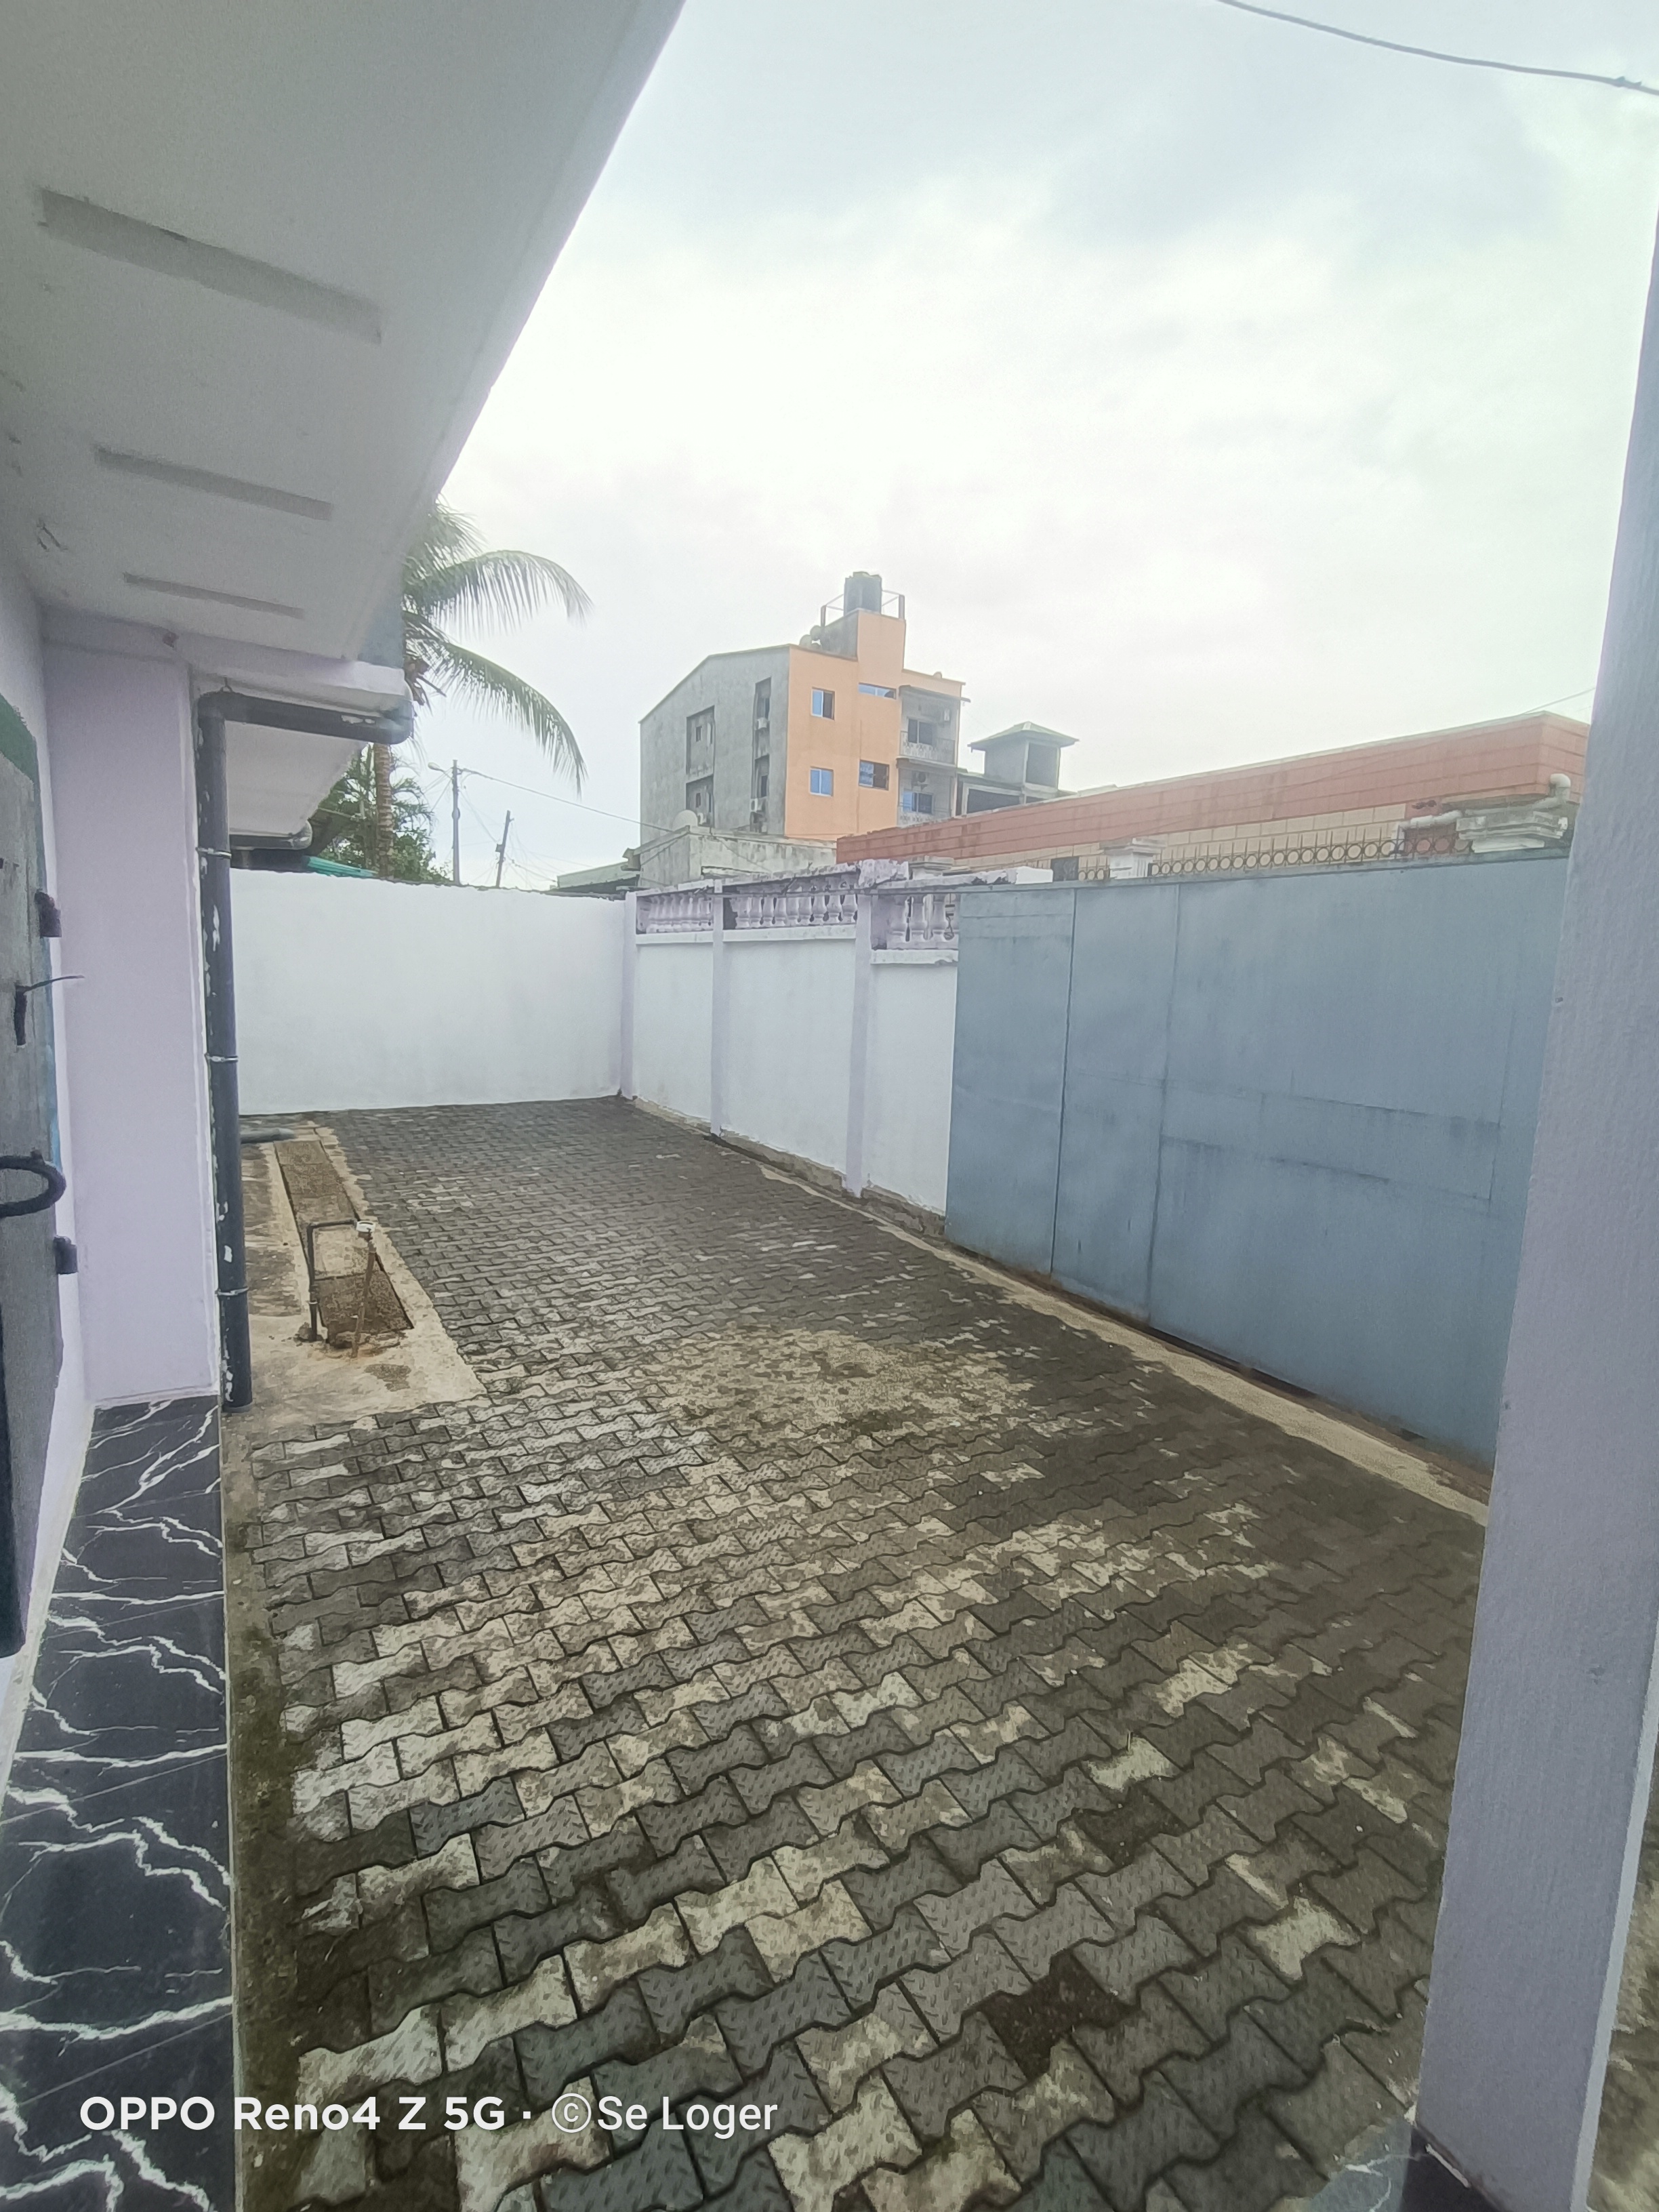 Maison (Villa) à louer - Douala, Kotto, H - 1 salon(s), 4 chambre(s), 3 salle(s) de bains - 250 000 FCFA / mois